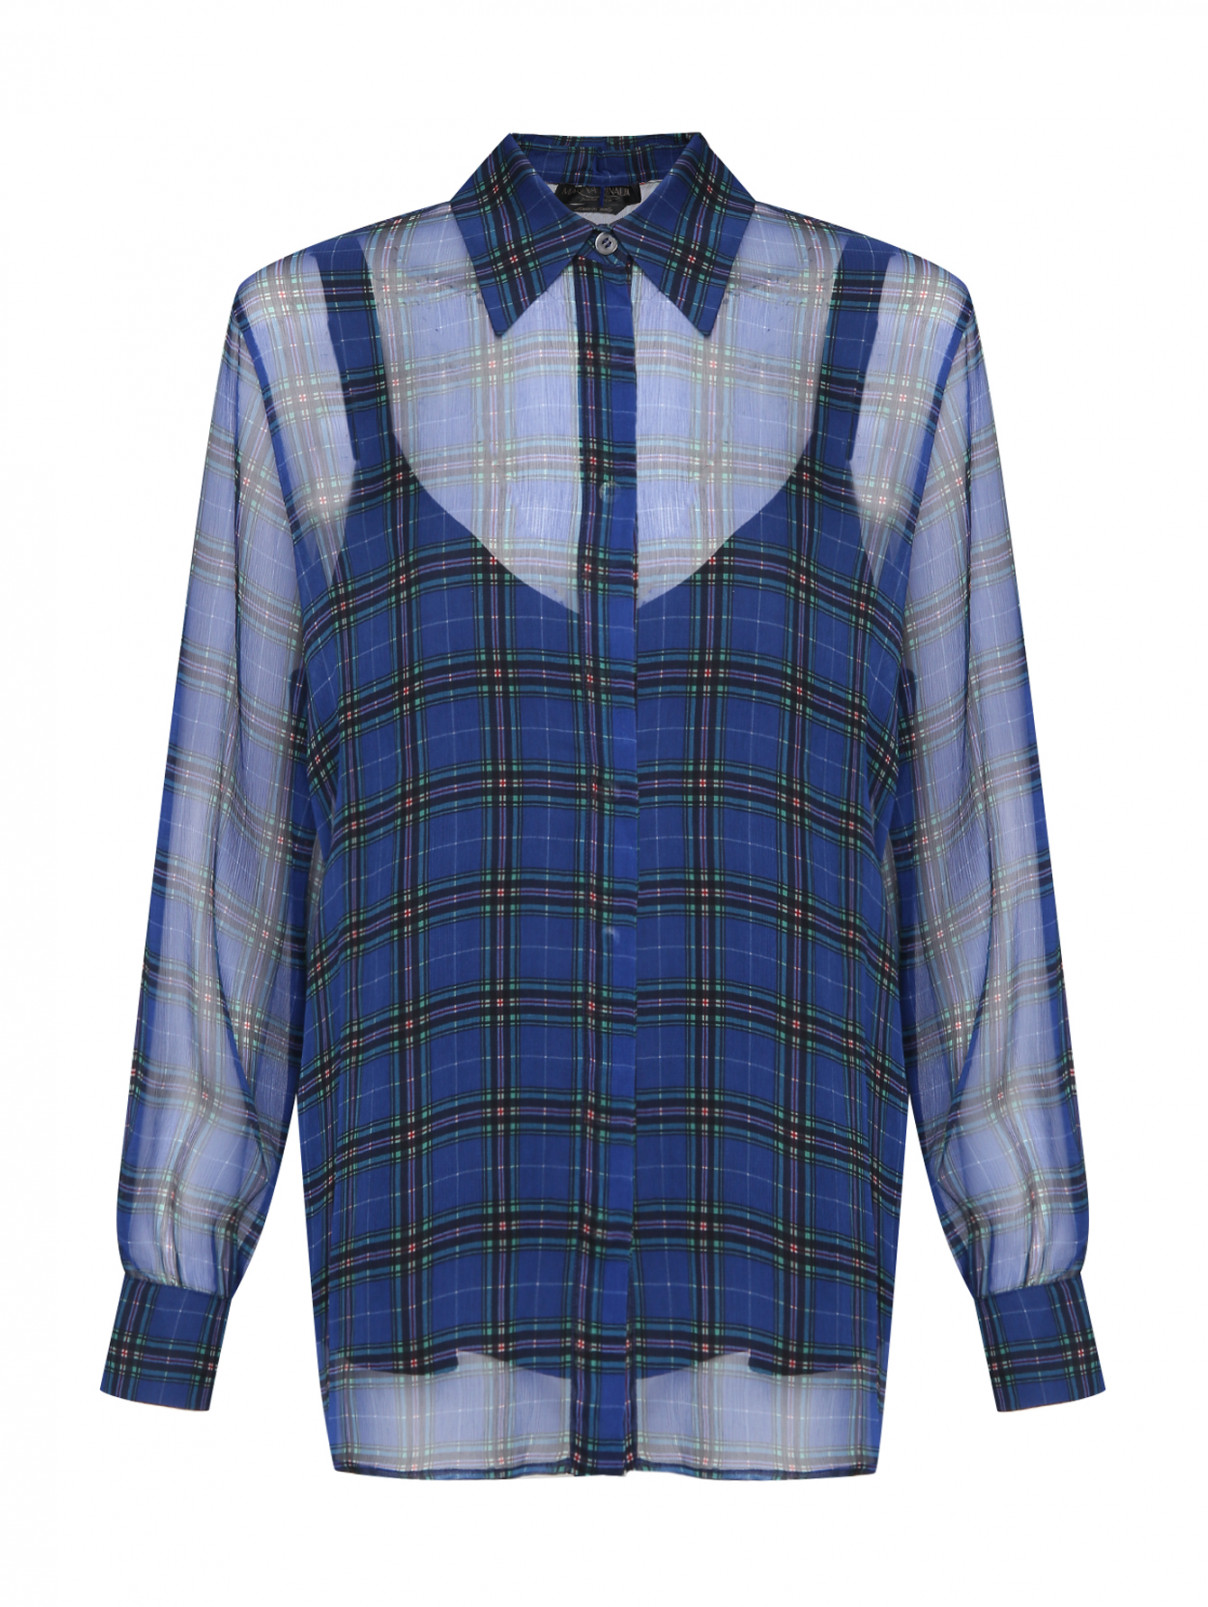 Шелковая рубашка в клетку Marina Rinaldi  –  Общий вид  – Цвет:  Синий